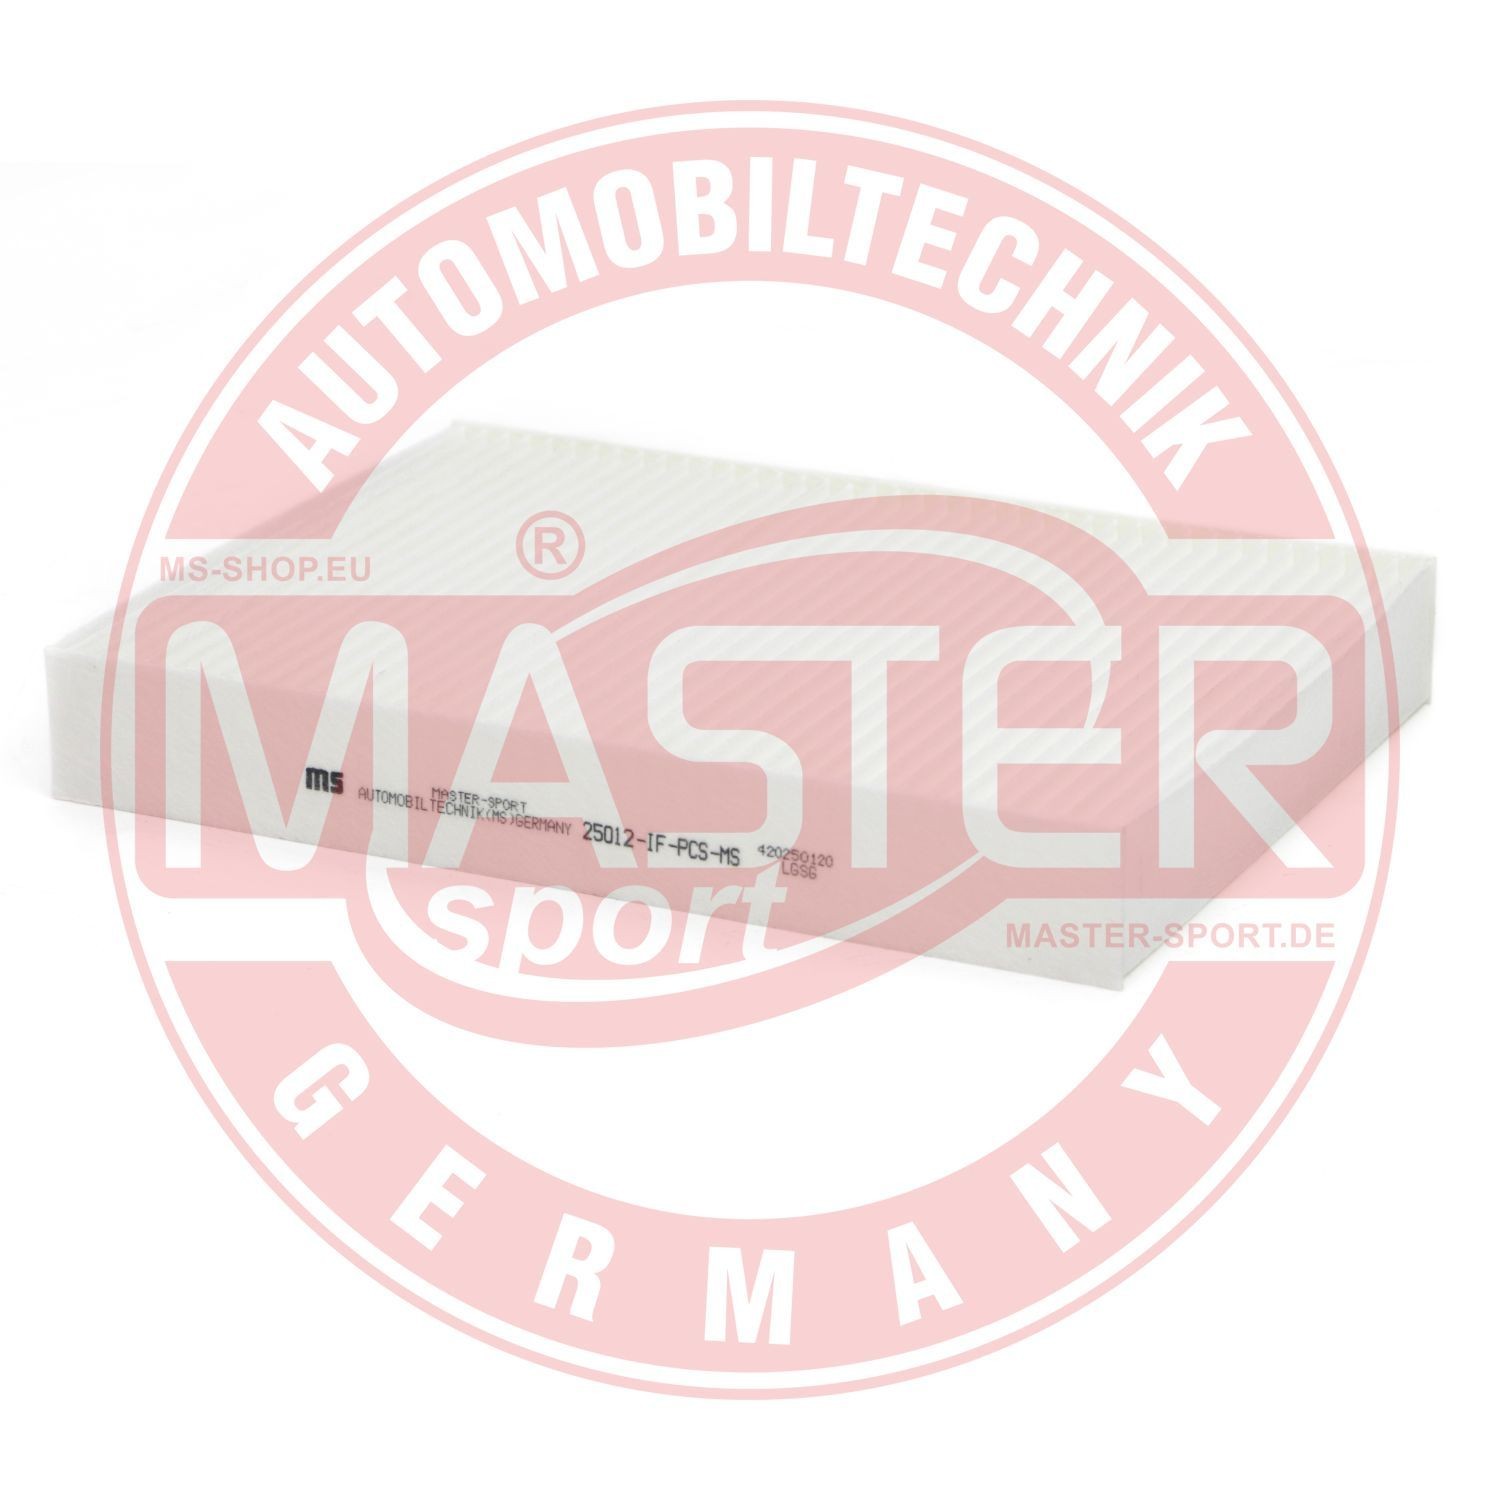 Renault CLIO Filtr kabinowy przeciwpyłkowy MASTER-SPORT 25012-IF-PCS-MS online kupić